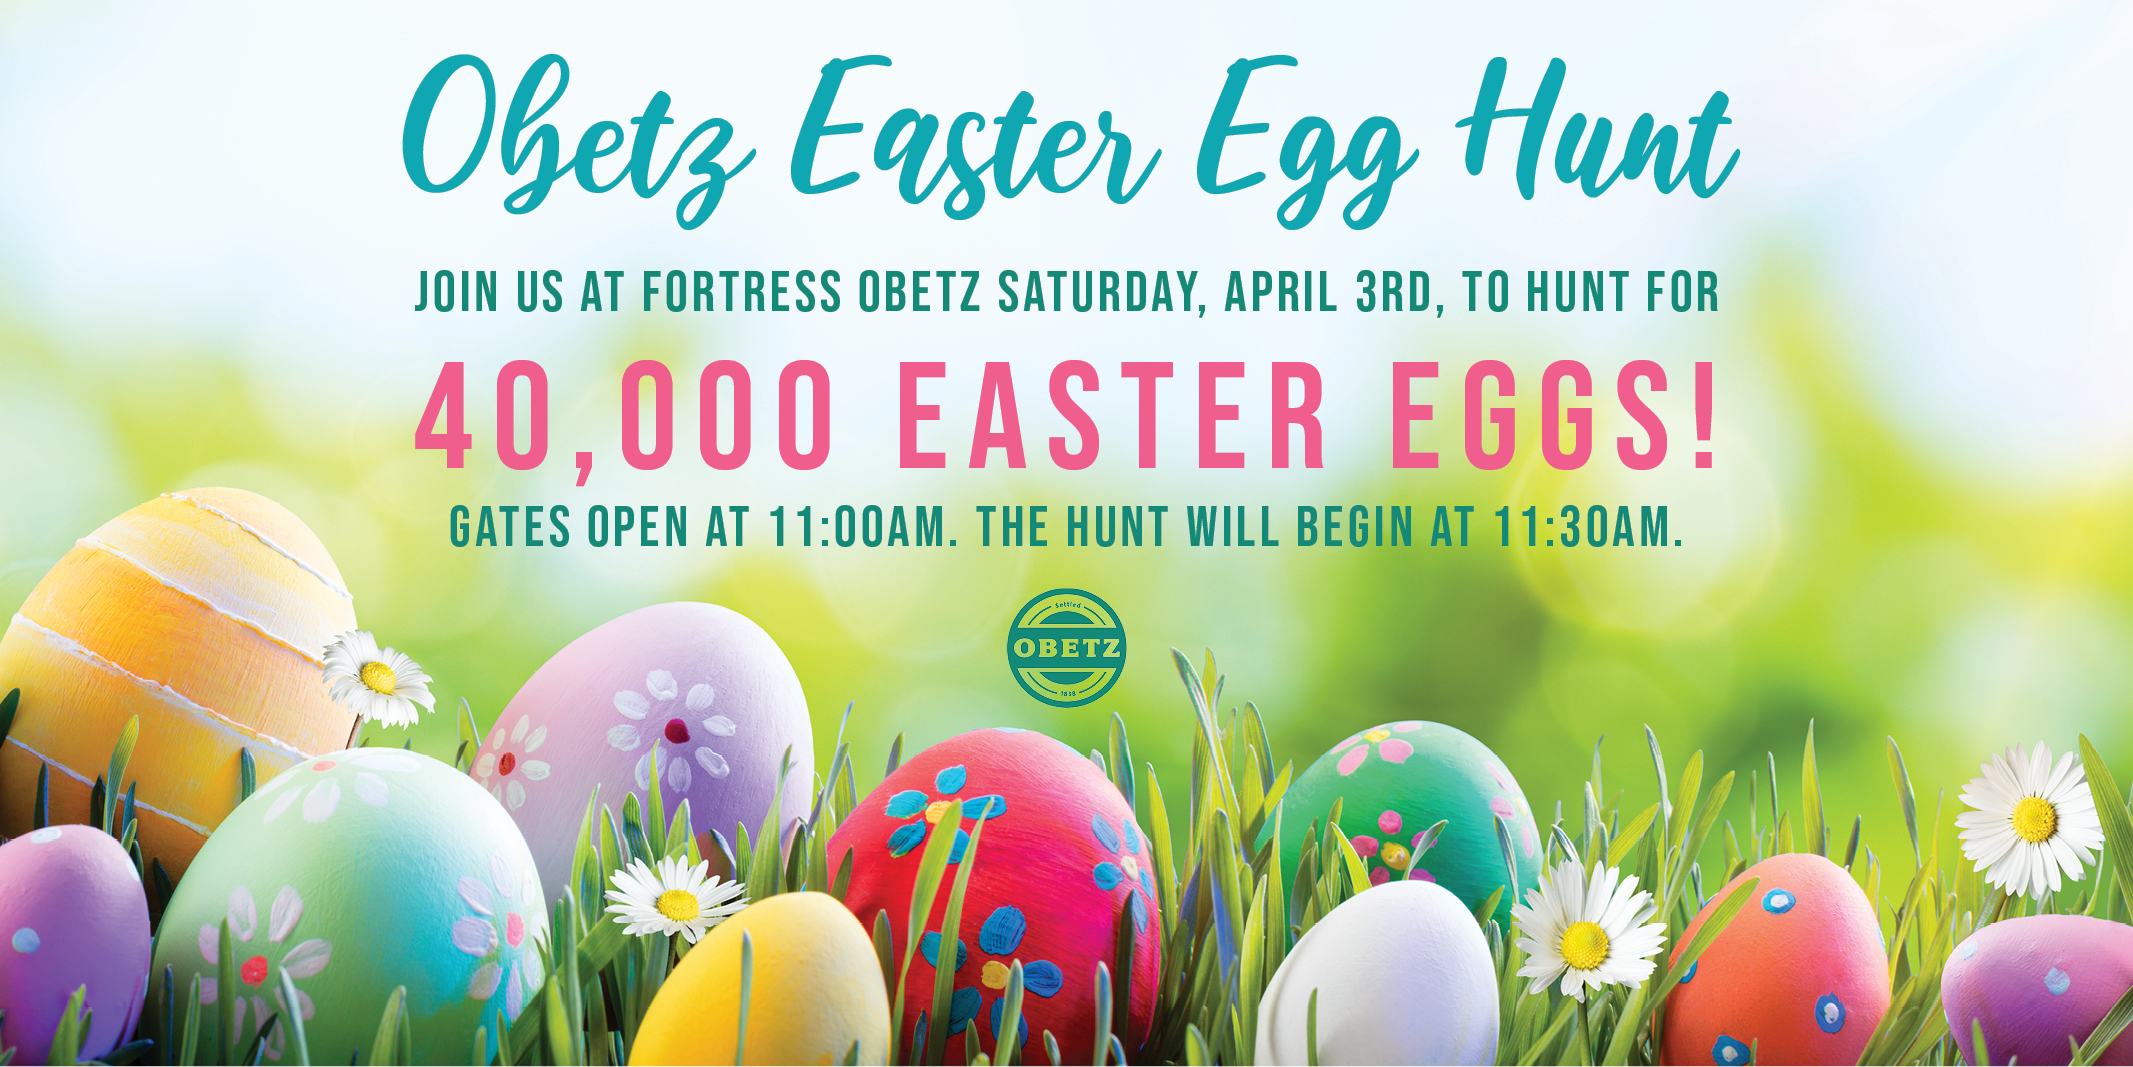 2021 Obetz Easter Egg Hunt - City of Obetz